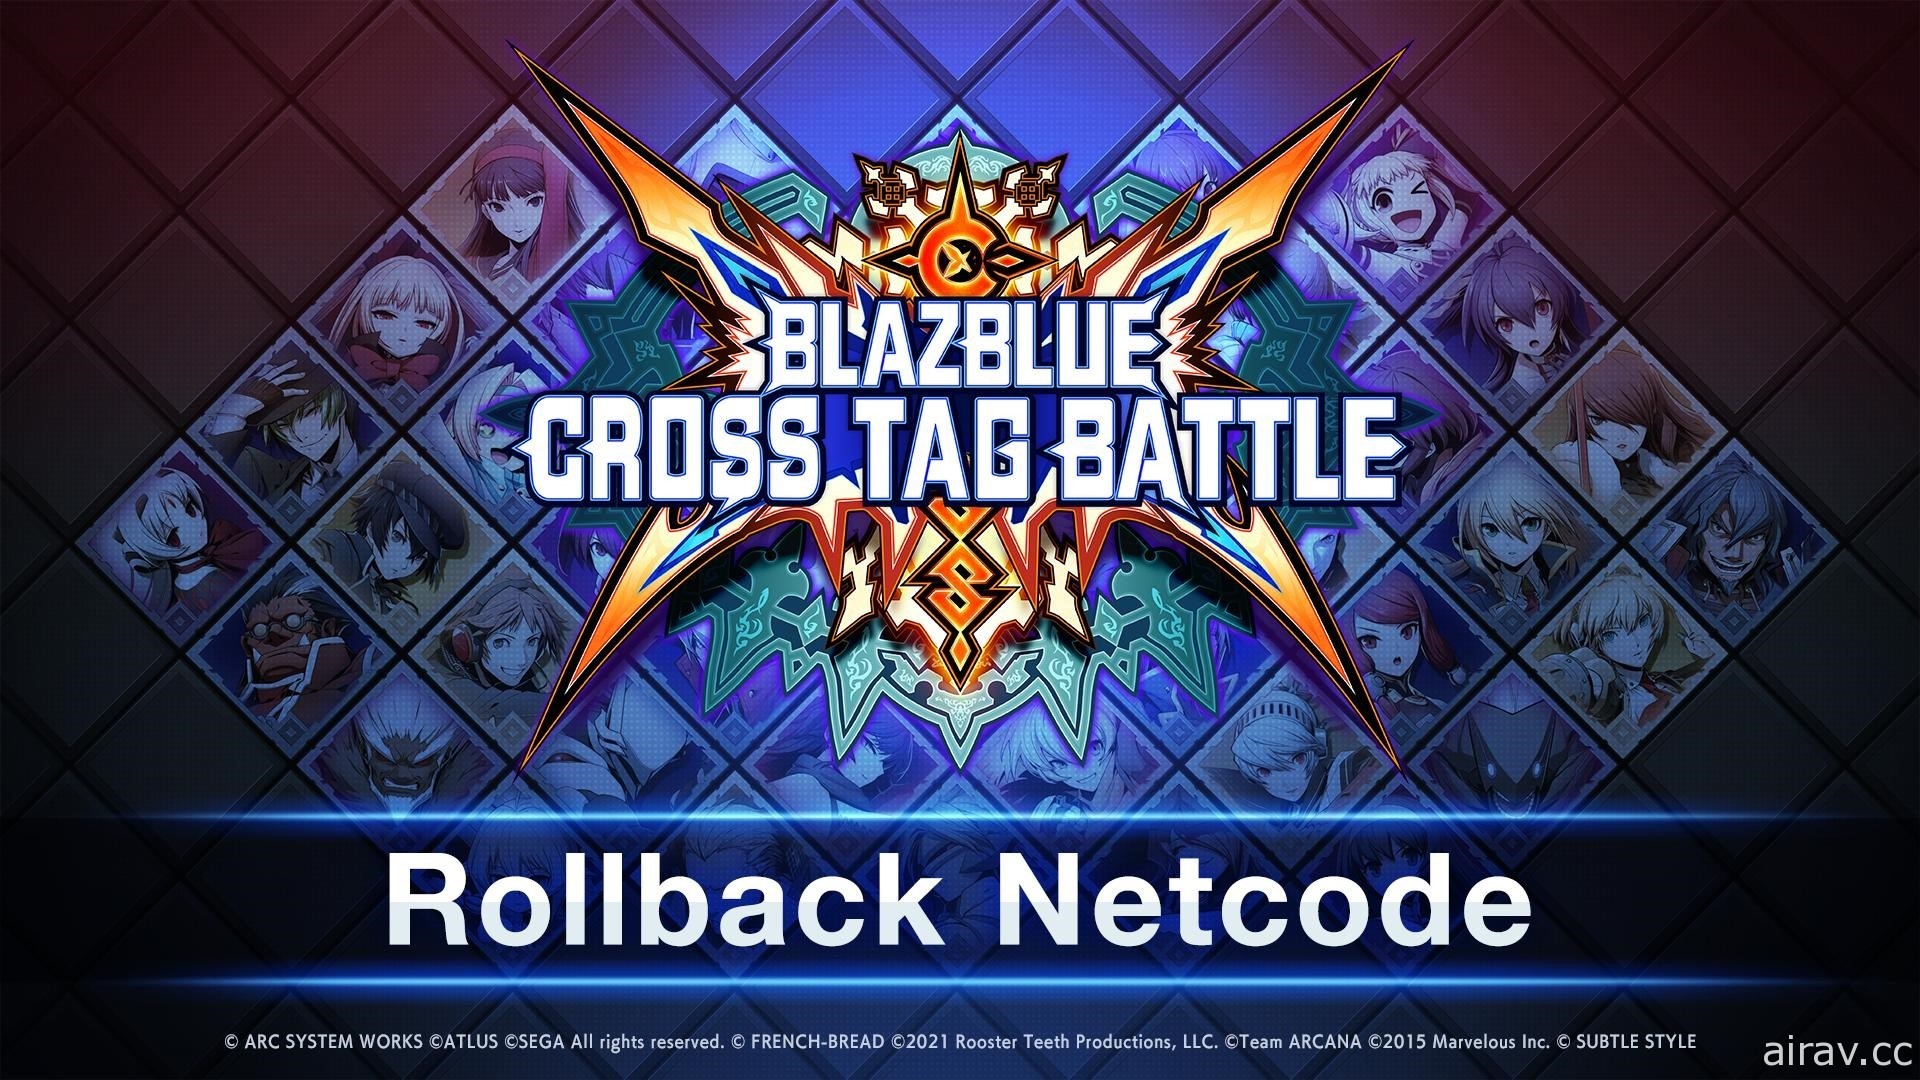 《蒼翼默示錄 Cross Tag Battle》將於 4/14 更新回滾型網路代碼功能